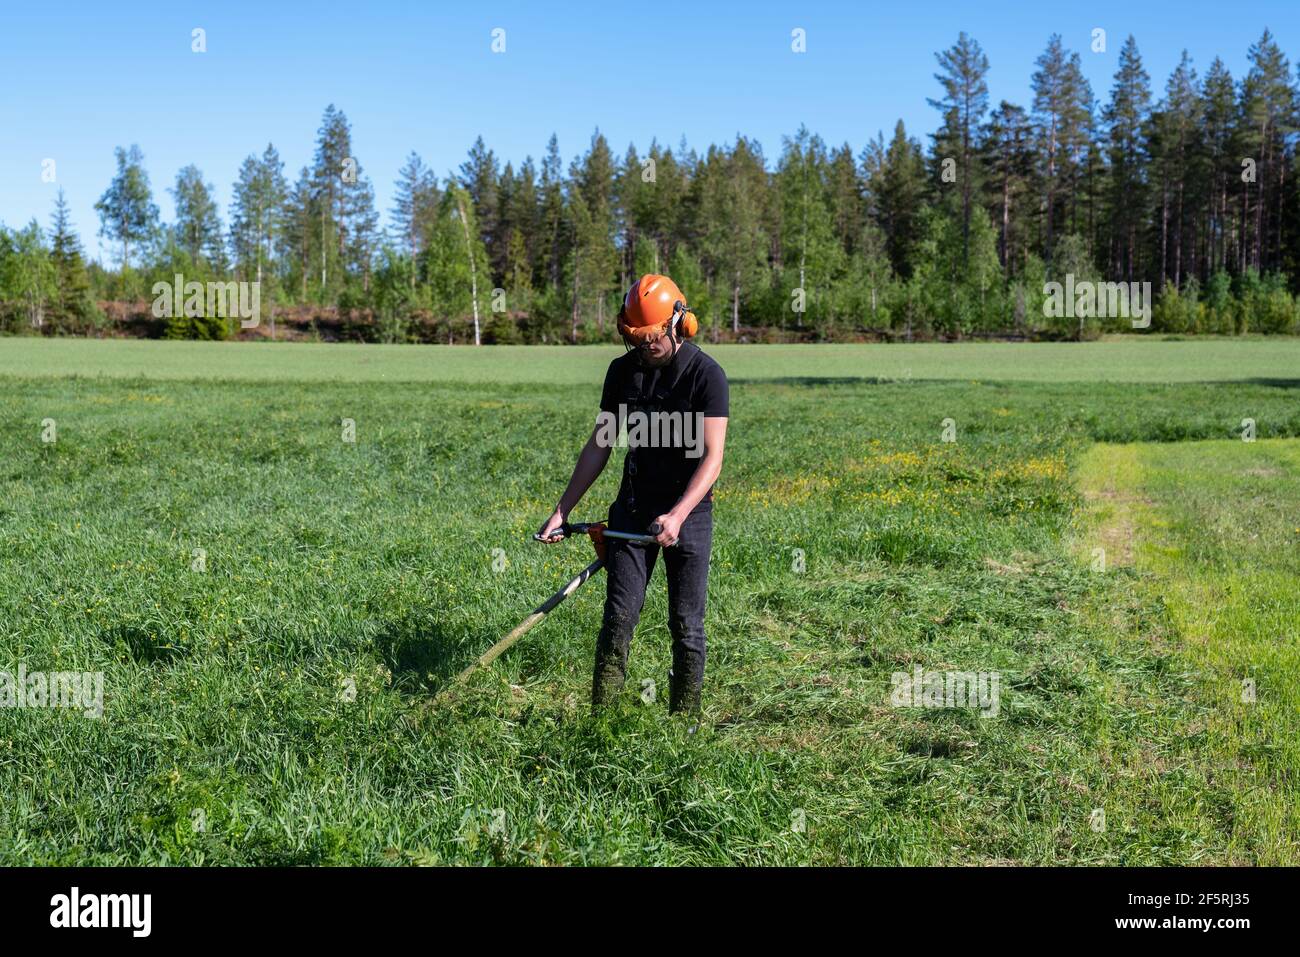 Vorderansicht des Jungen im Teenageralter, der Gras mit einem handgeführten Benzinrasenmäher mäht. Er trägt Kopfhörer mit Augen- und Gehörschutz. Gesundheits- und Sicherheitskonzept, worke Stockfoto